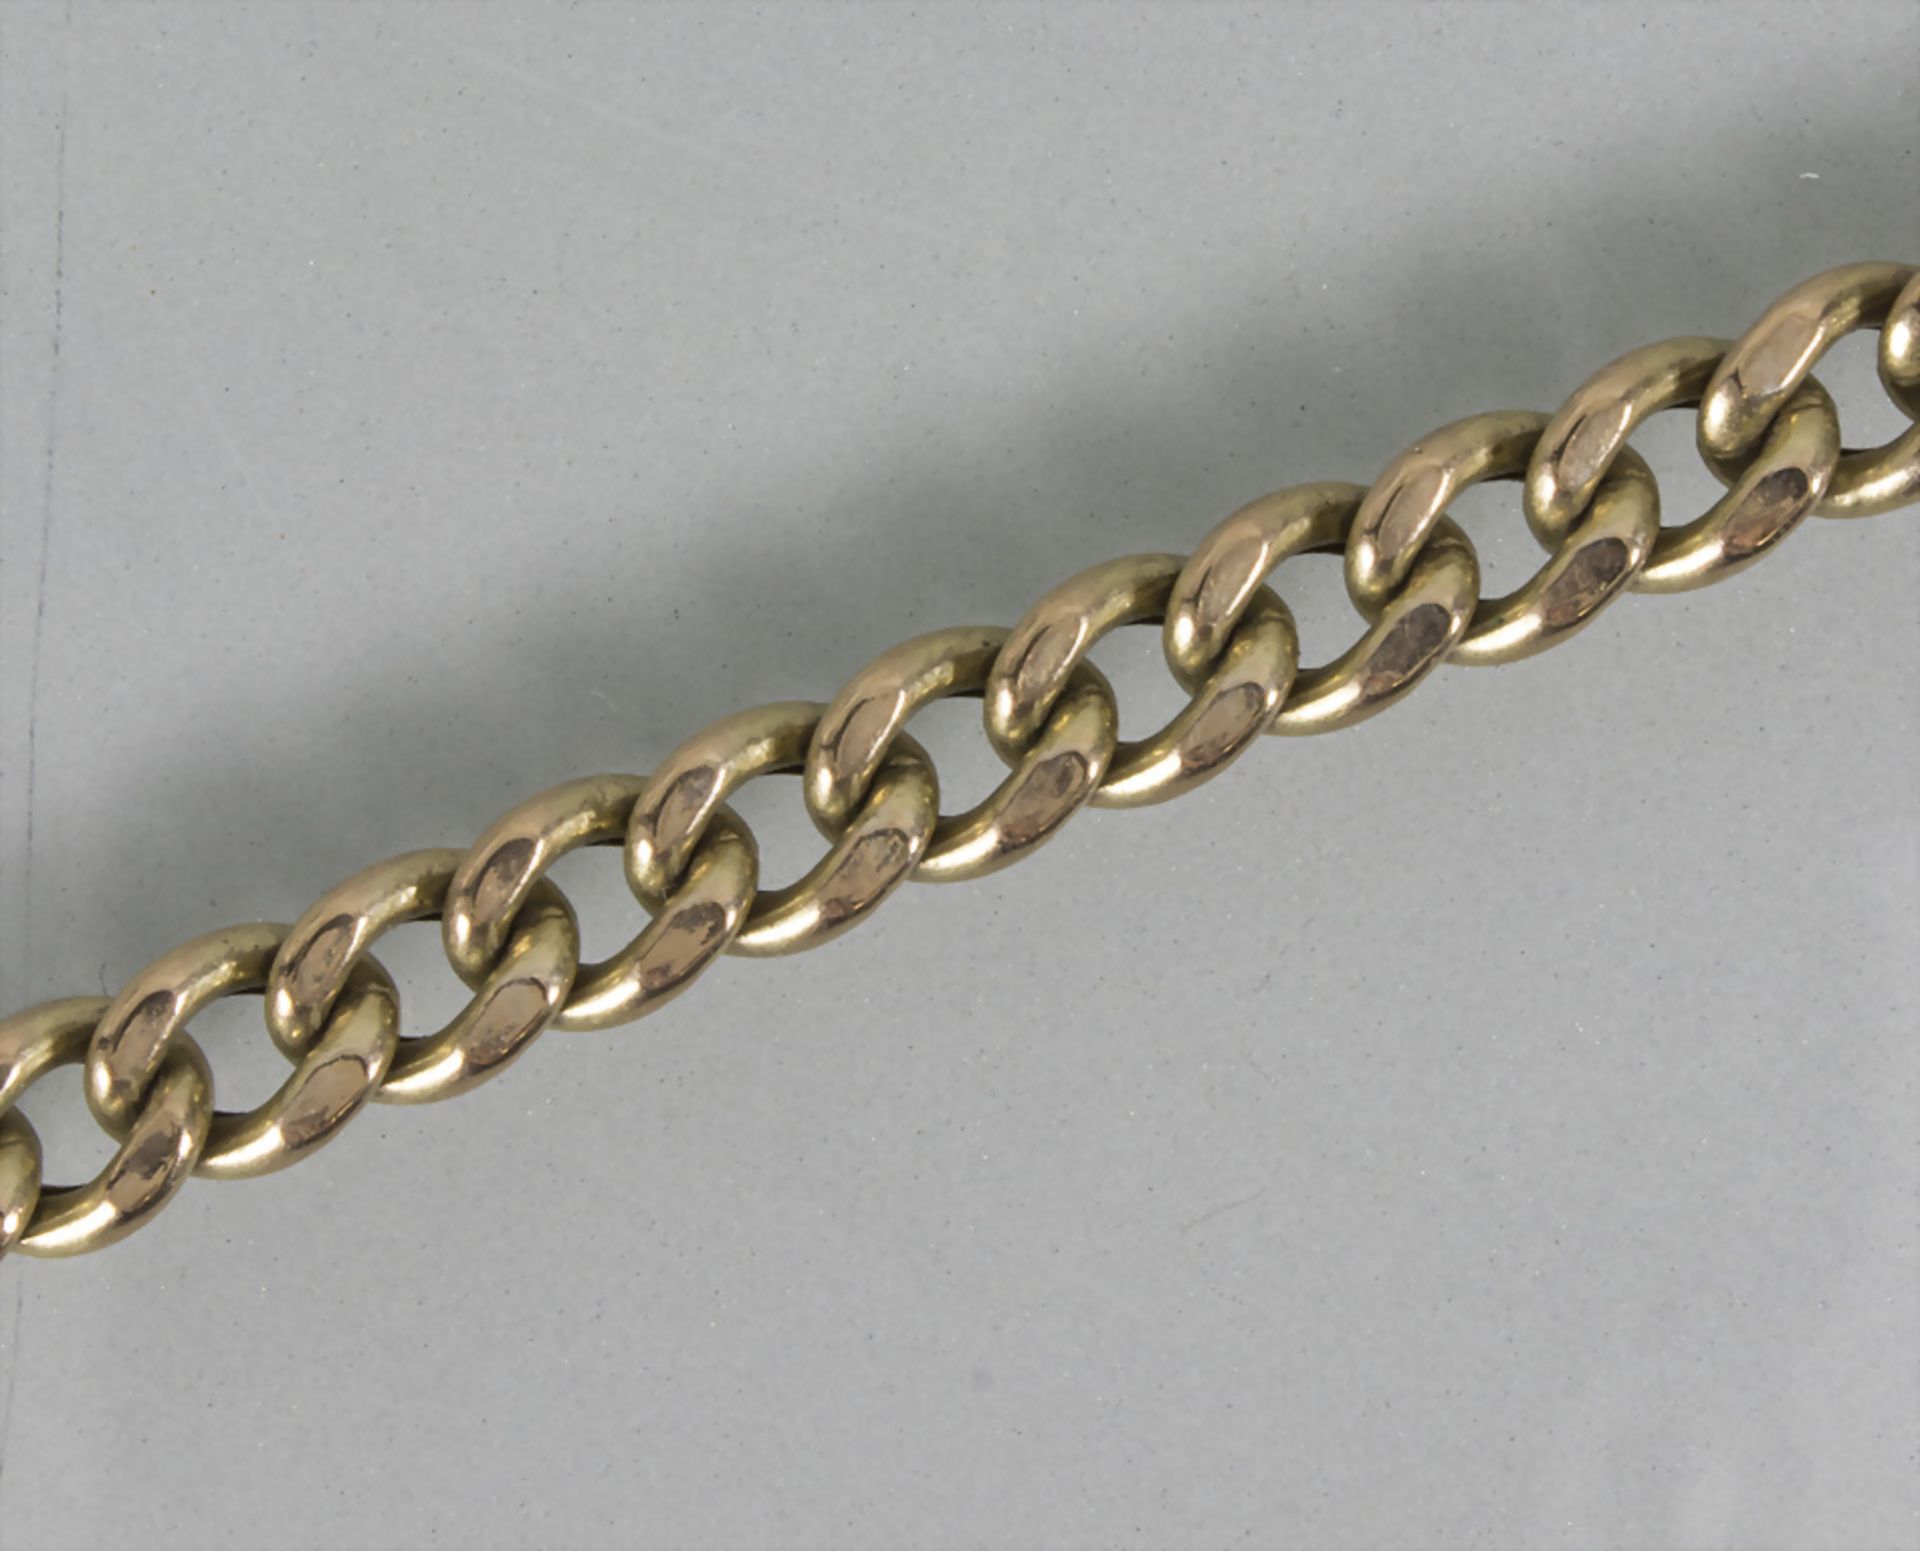 Damen Goldkette / An 8 ct gold necklace